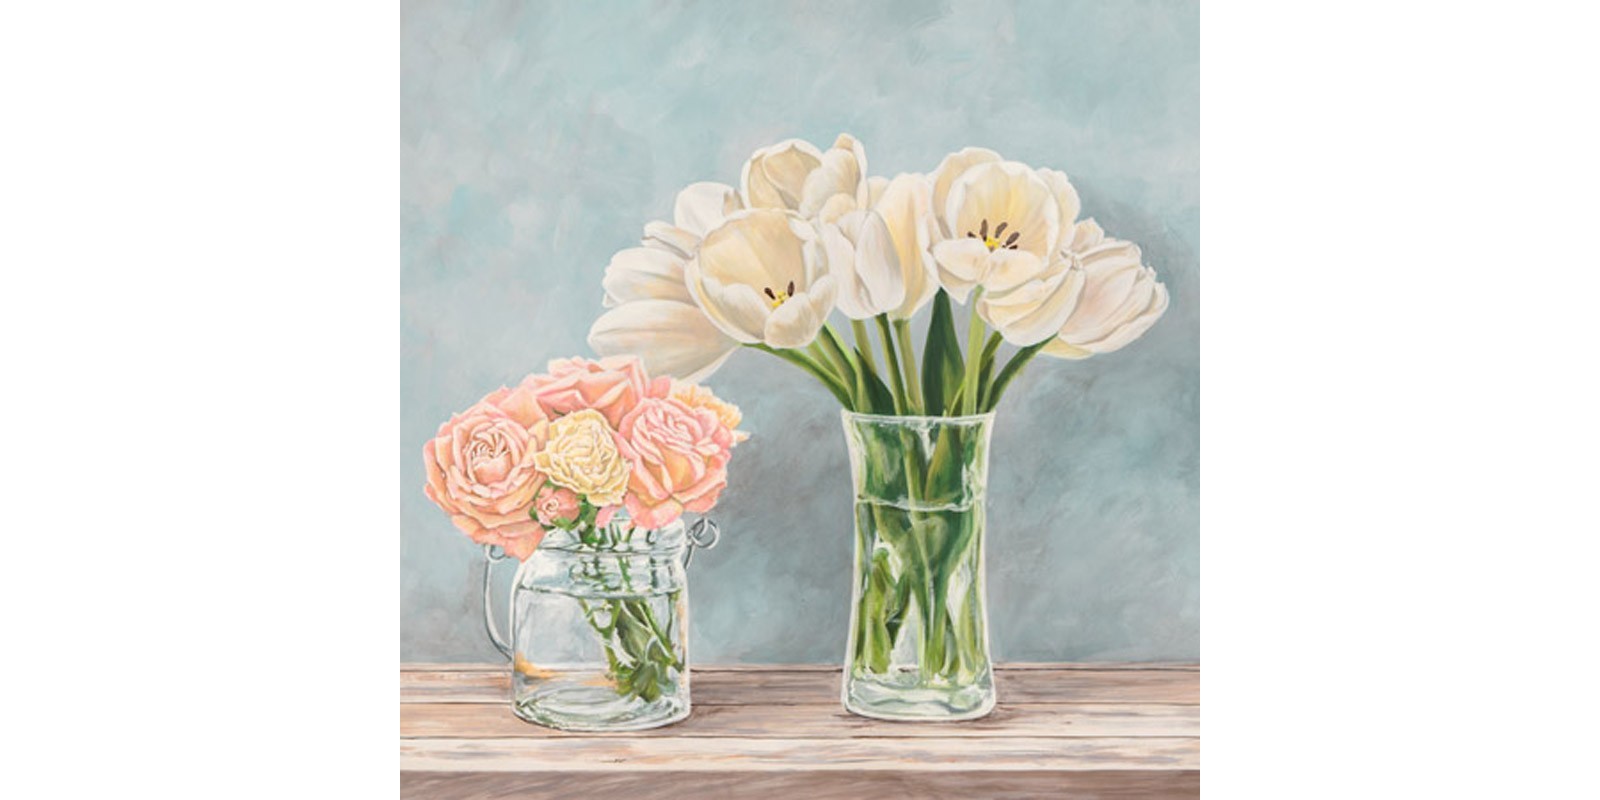 Remy Dellal - Fleurs et Vases Aquamarine I